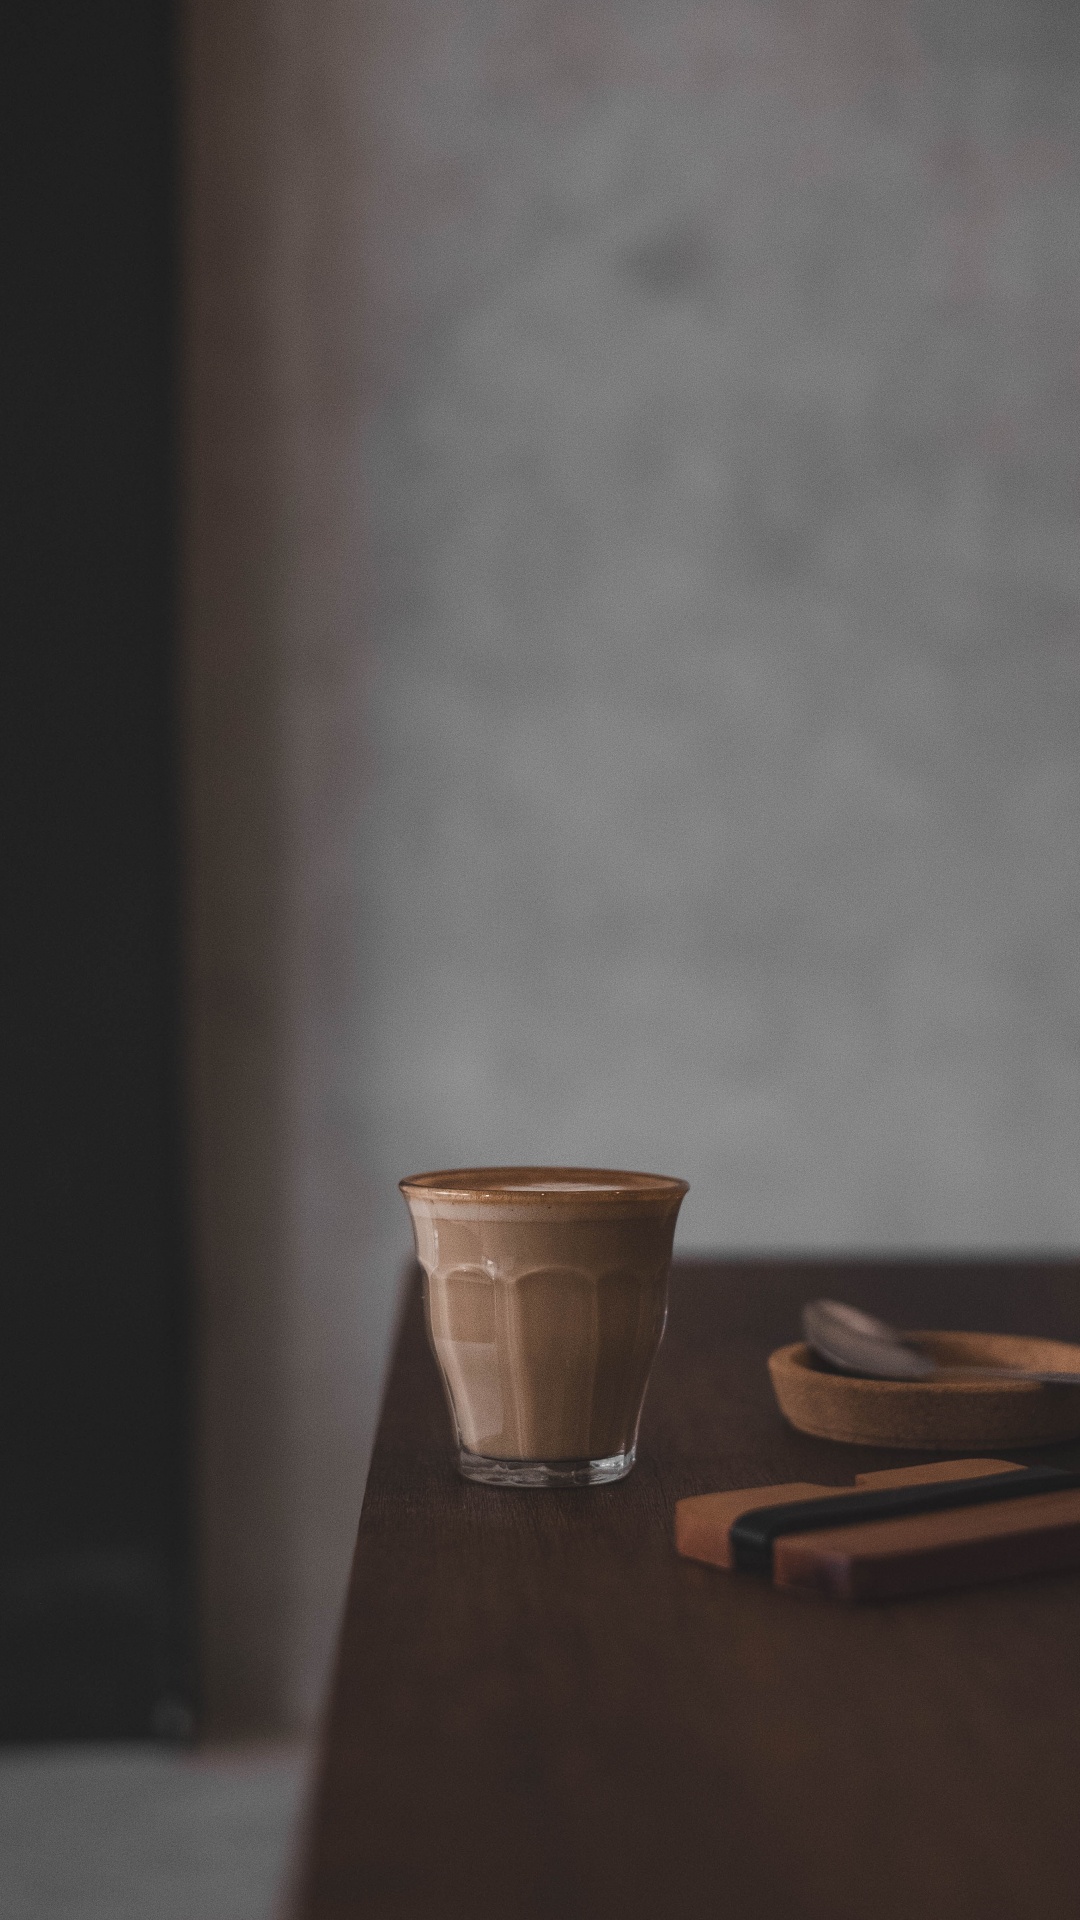 棕色, 仍然生活, 咖啡杯, 陶瓷 壁纸 1080x1920 允许